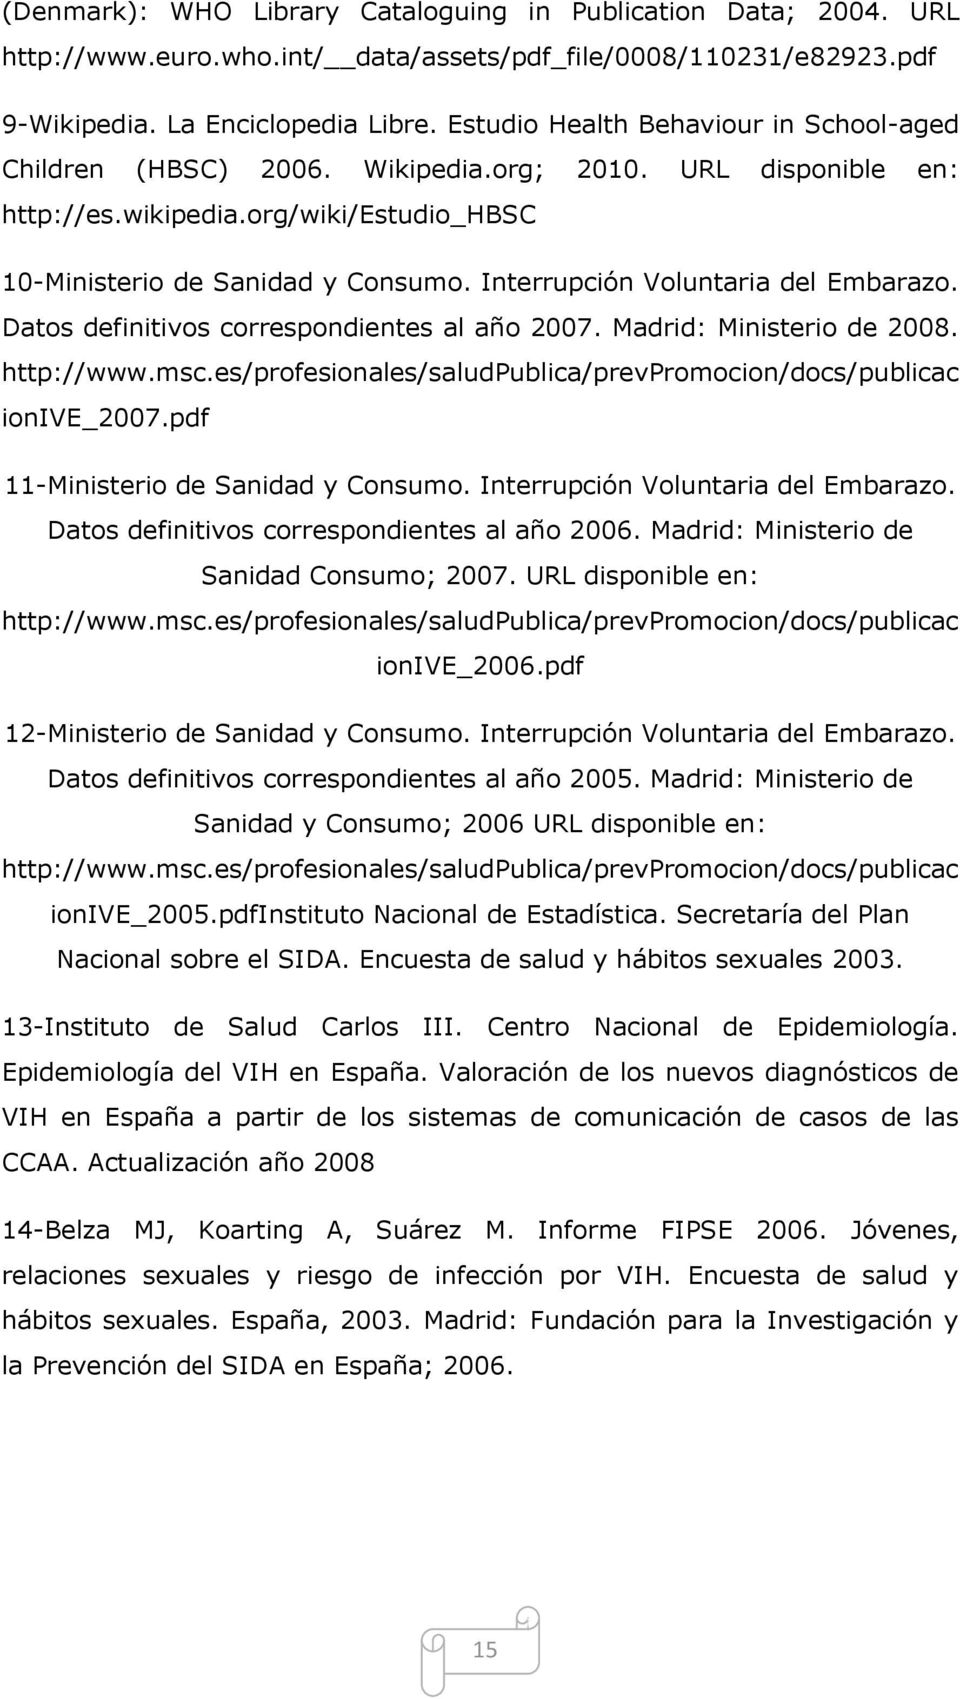 Interrupción Voluntaria del Embarazo. Datos definitivos correspondientes al año 2007. Madrid: Ministerio de 2008. http://www.msc.es/profesionales/saludpublica/prevpromocion/docs/publicac ionive_2007.